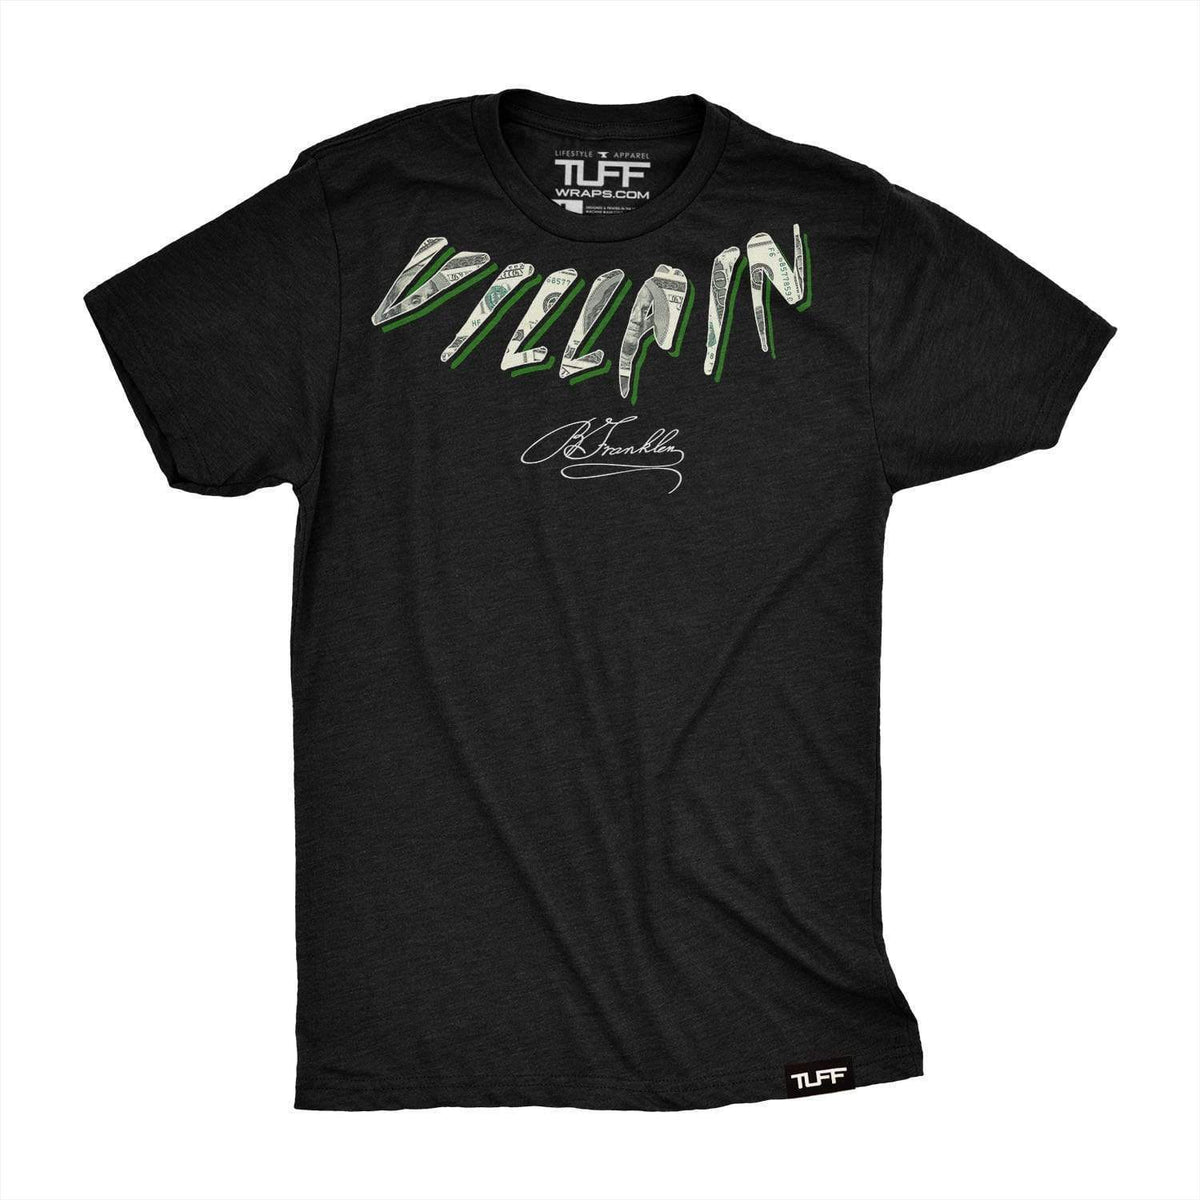 Villain Money Neck Tee T-shirt